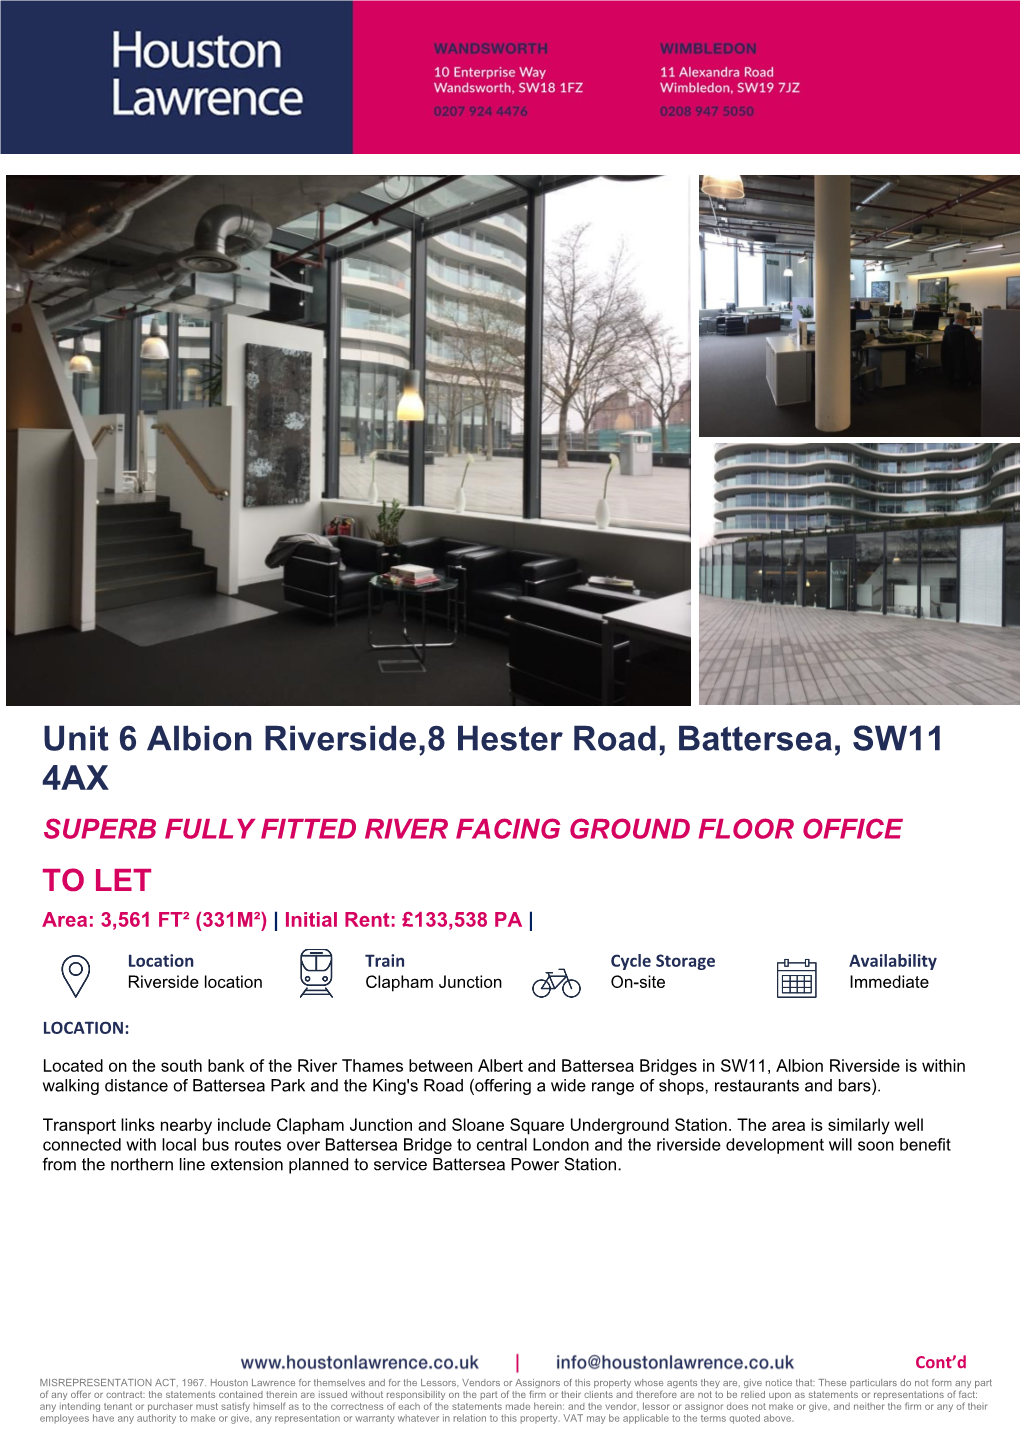 Unit 6 Albion Riverside,8 Hester Road, Battersea, SW11